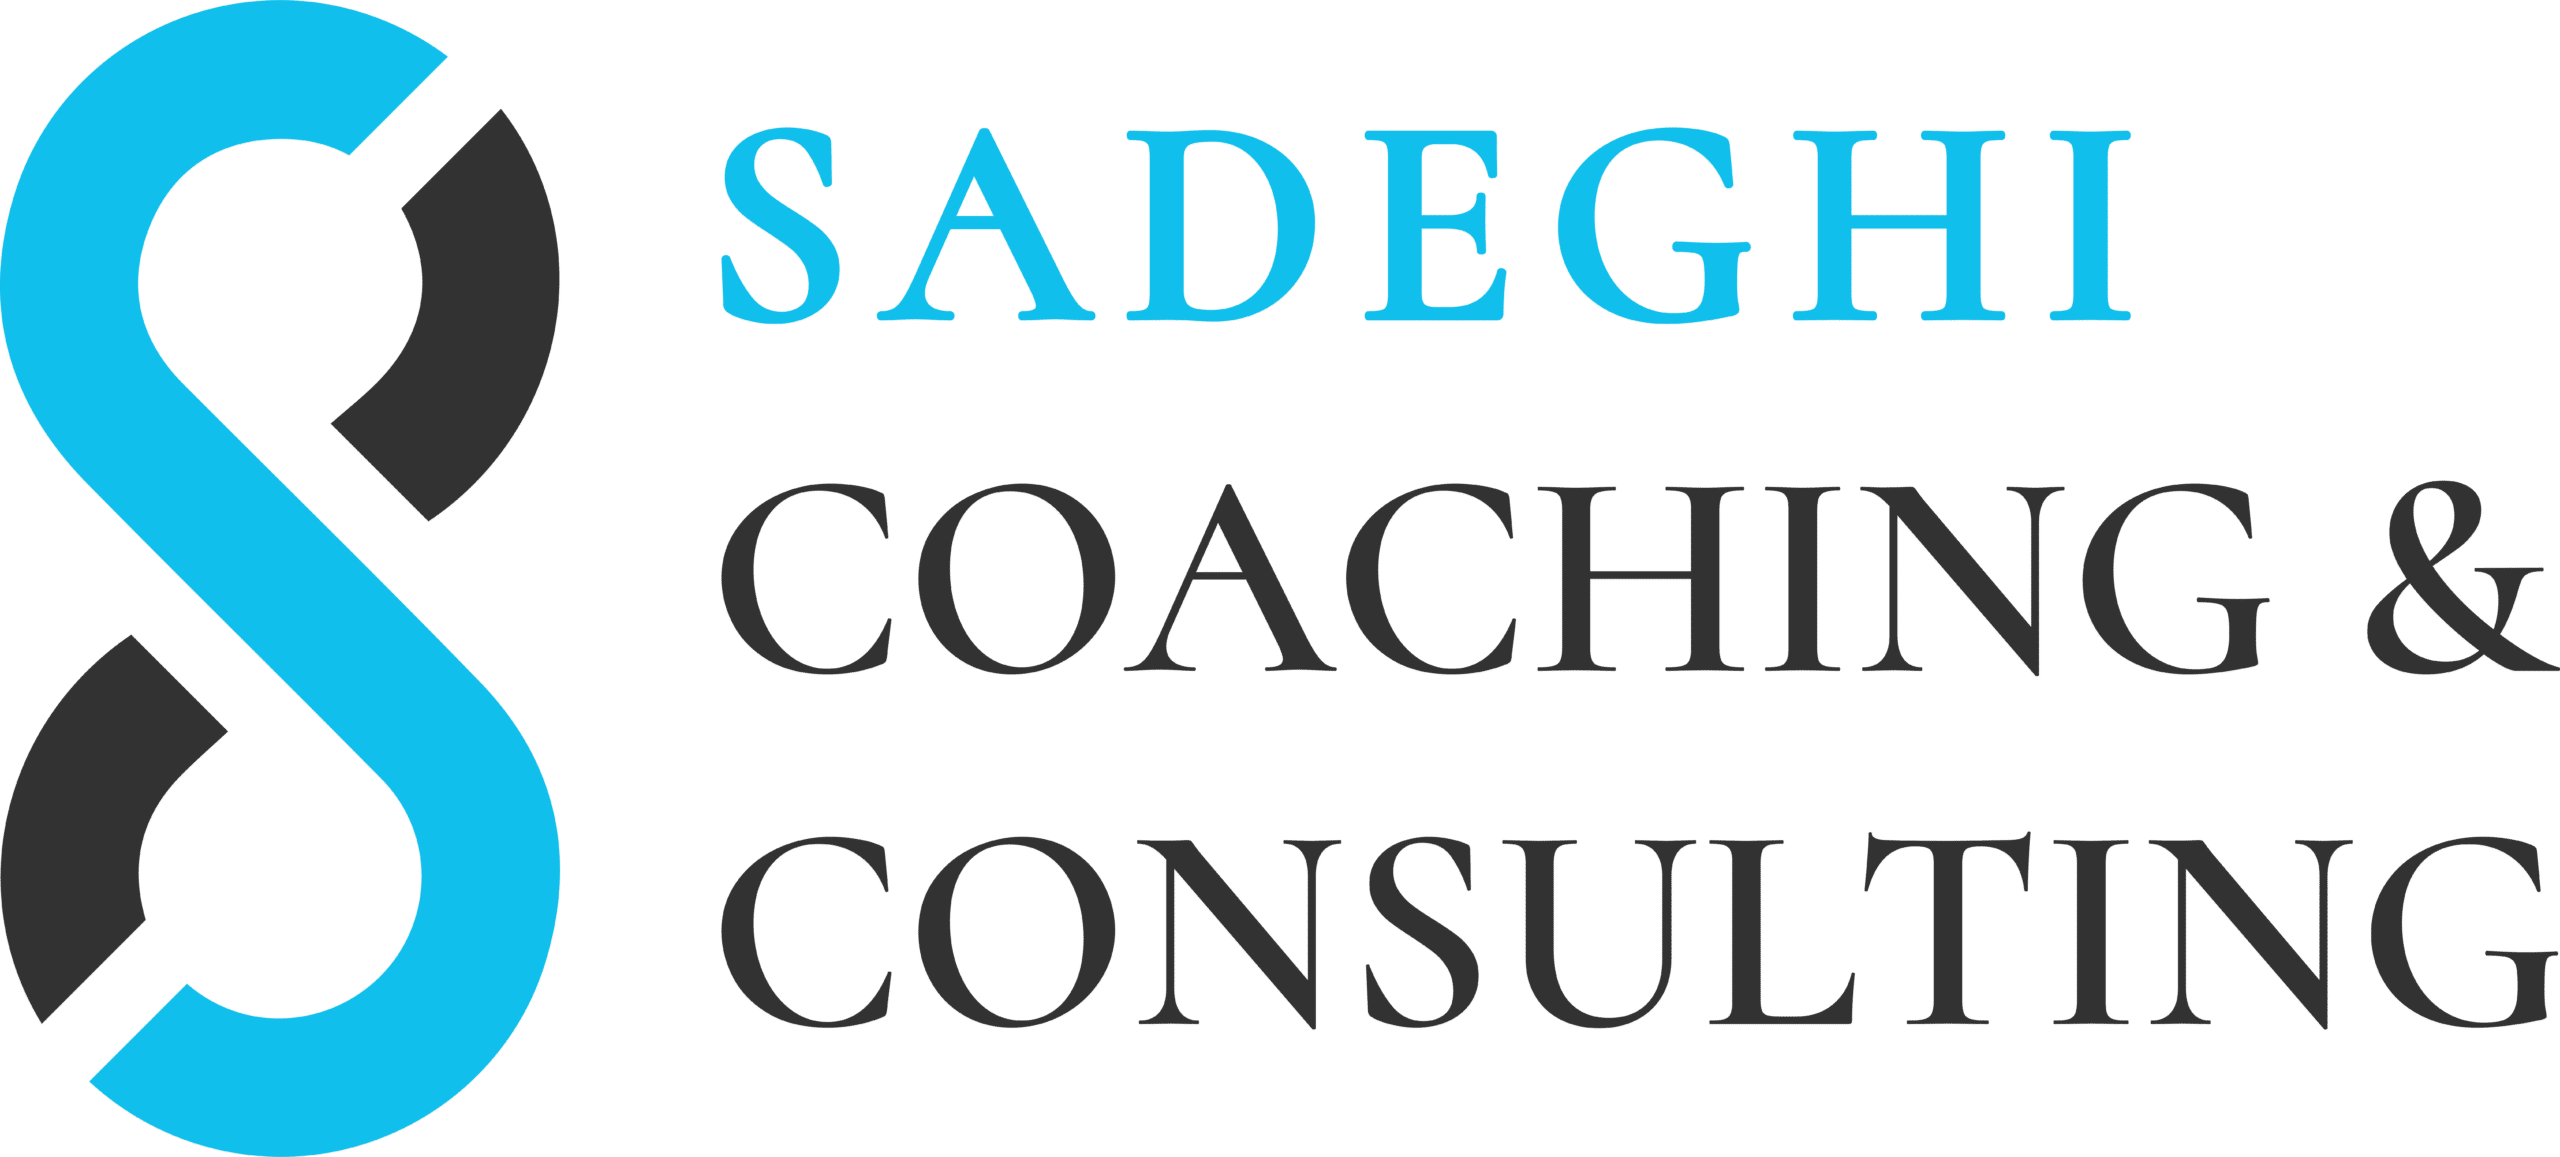 Sadeghi Coaching & Consulting